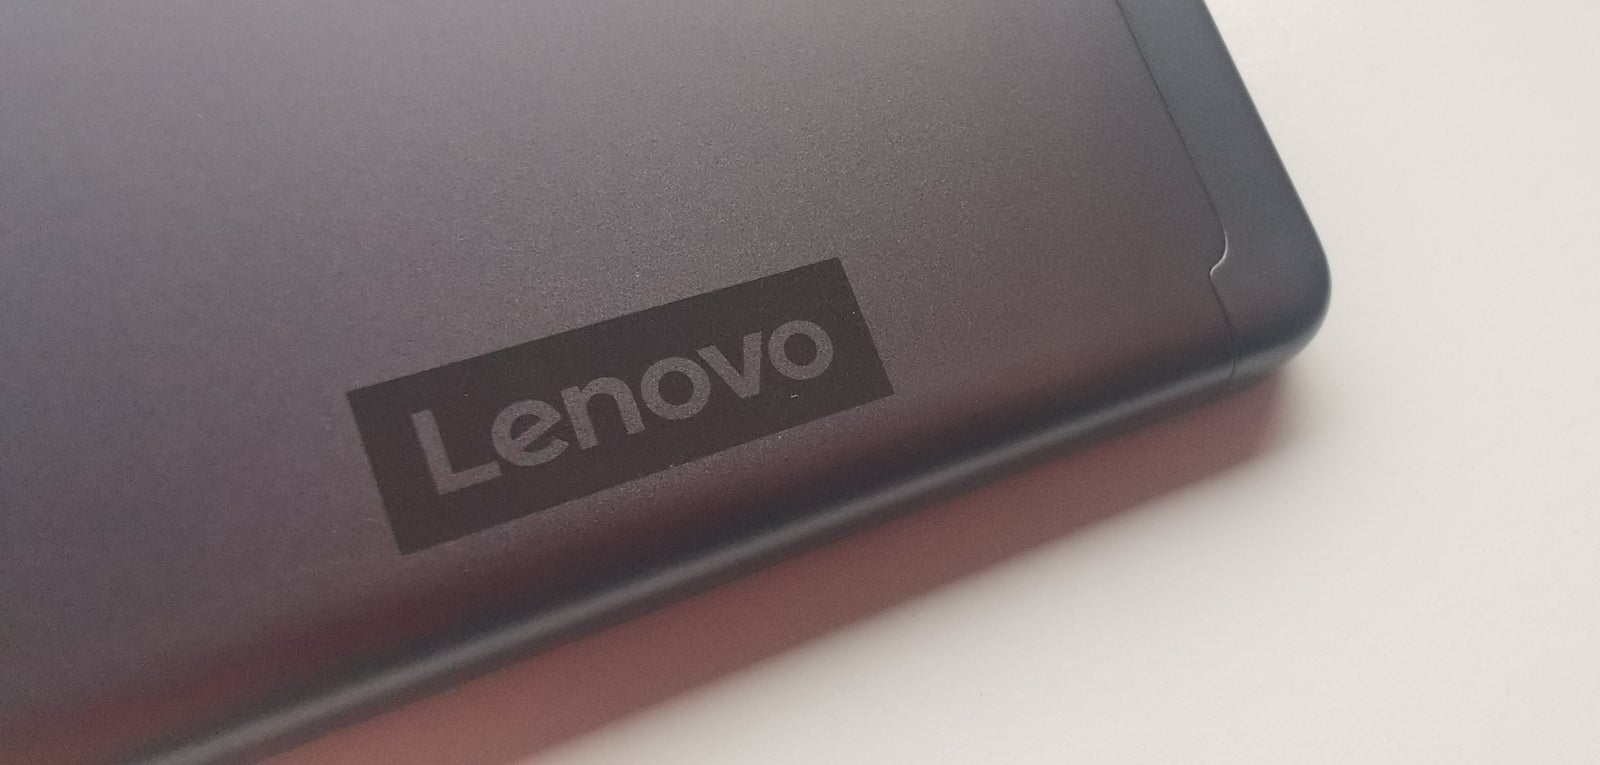 Lenovo, TB-X306X, 10,1 tommer